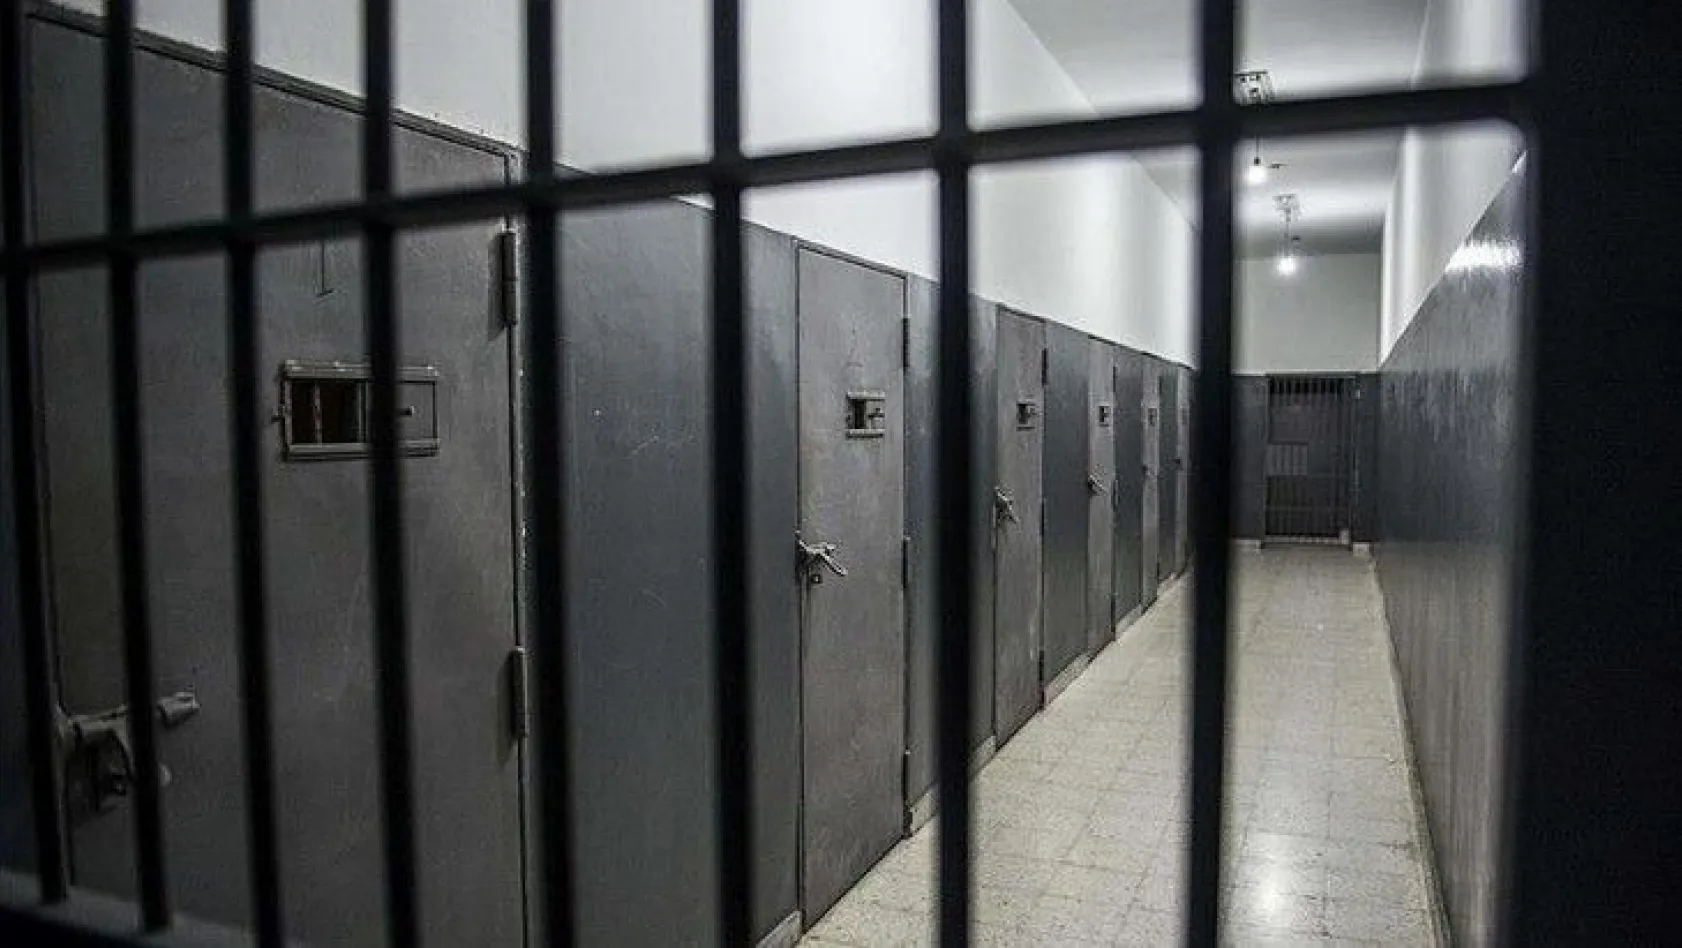 AK Parti'den açık cezaevlerine ilişkin açıklama